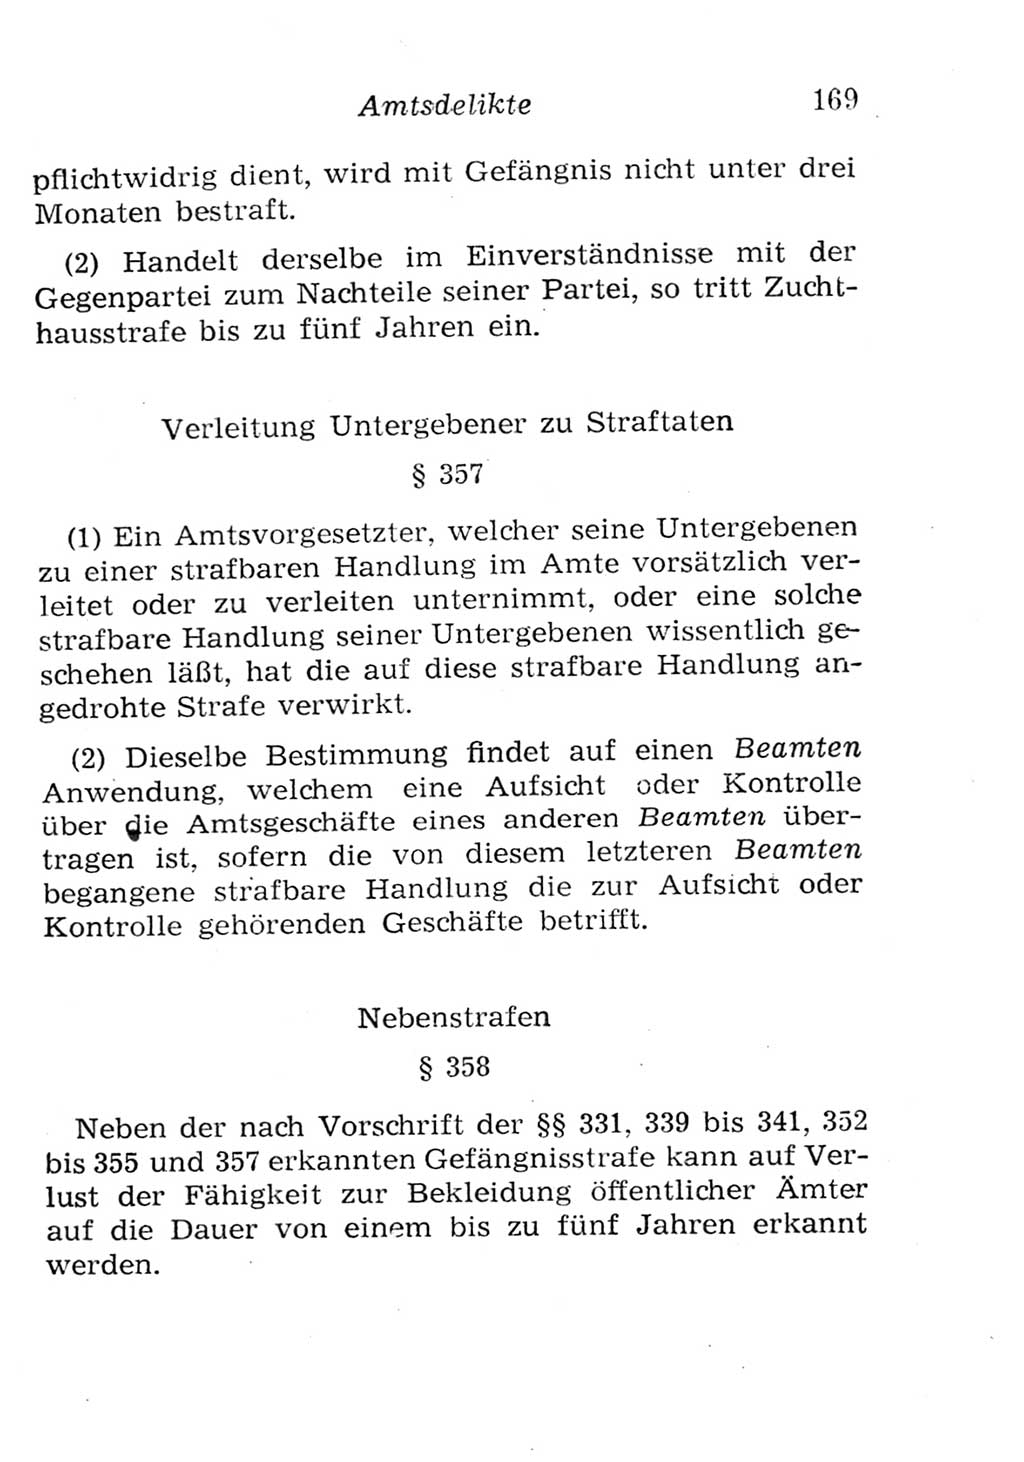 Strafgesetzbuch (StGB) und andere Strafgesetze [Deutsche Demokratische Republik (DDR)] 1957, Seite 169 (StGB Strafges. DDR 1957, S. 169)